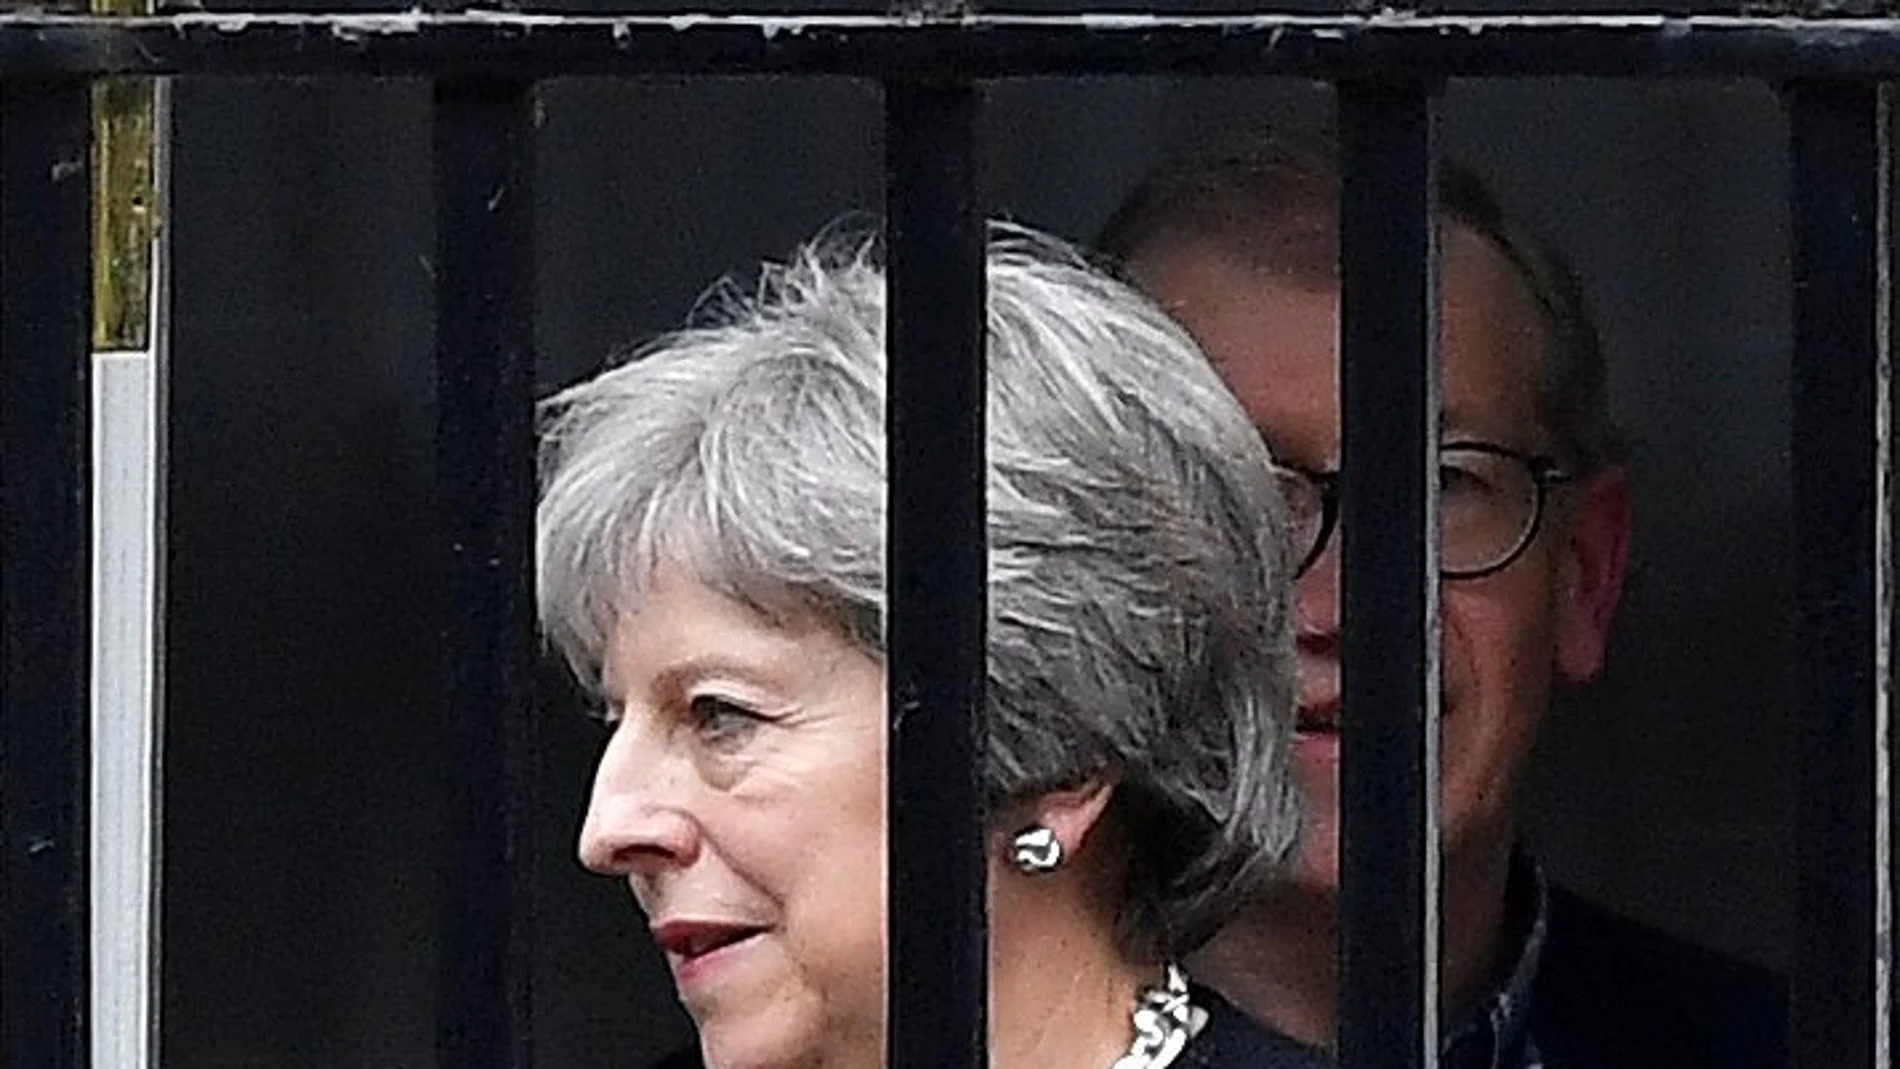 La primera ministra británica, Theresa May, y su marido Philip salen del número 10 de Downing Street, ayer